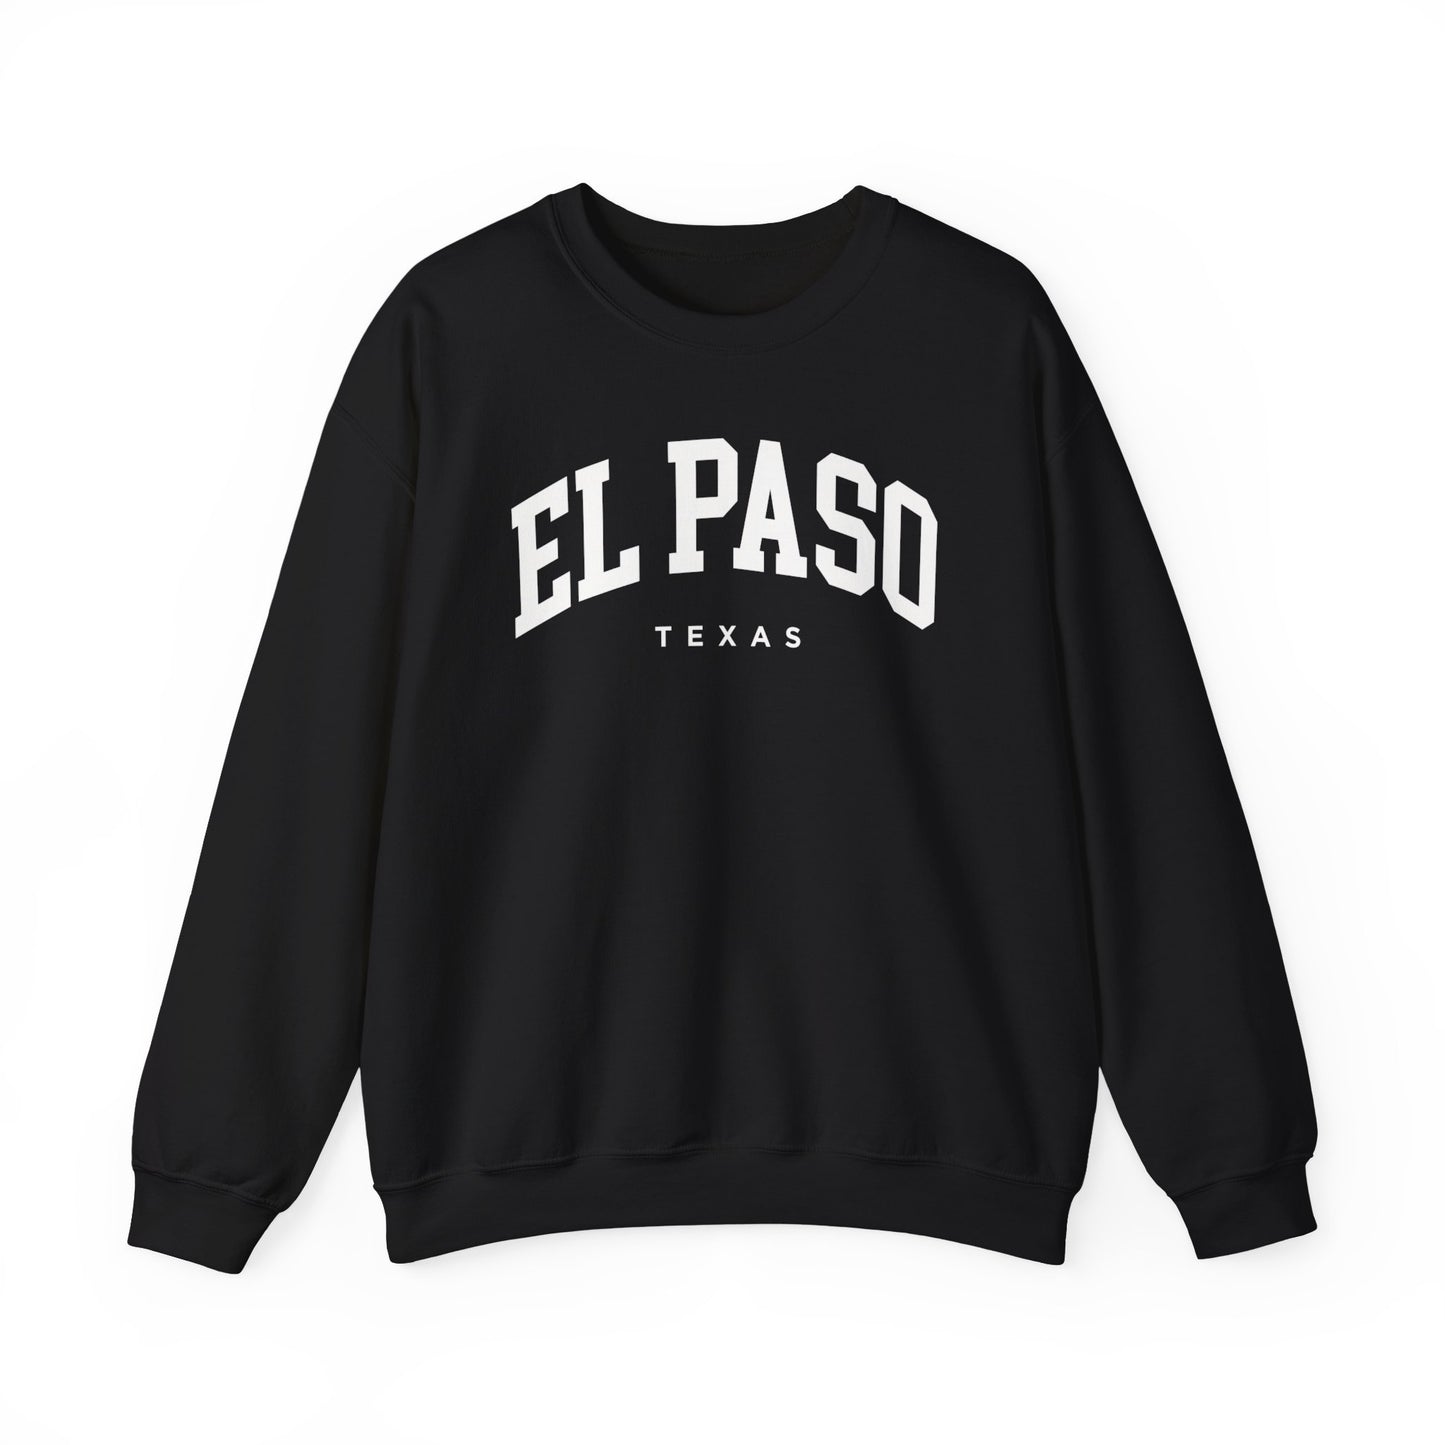 El Paso Texas Sweatshirt